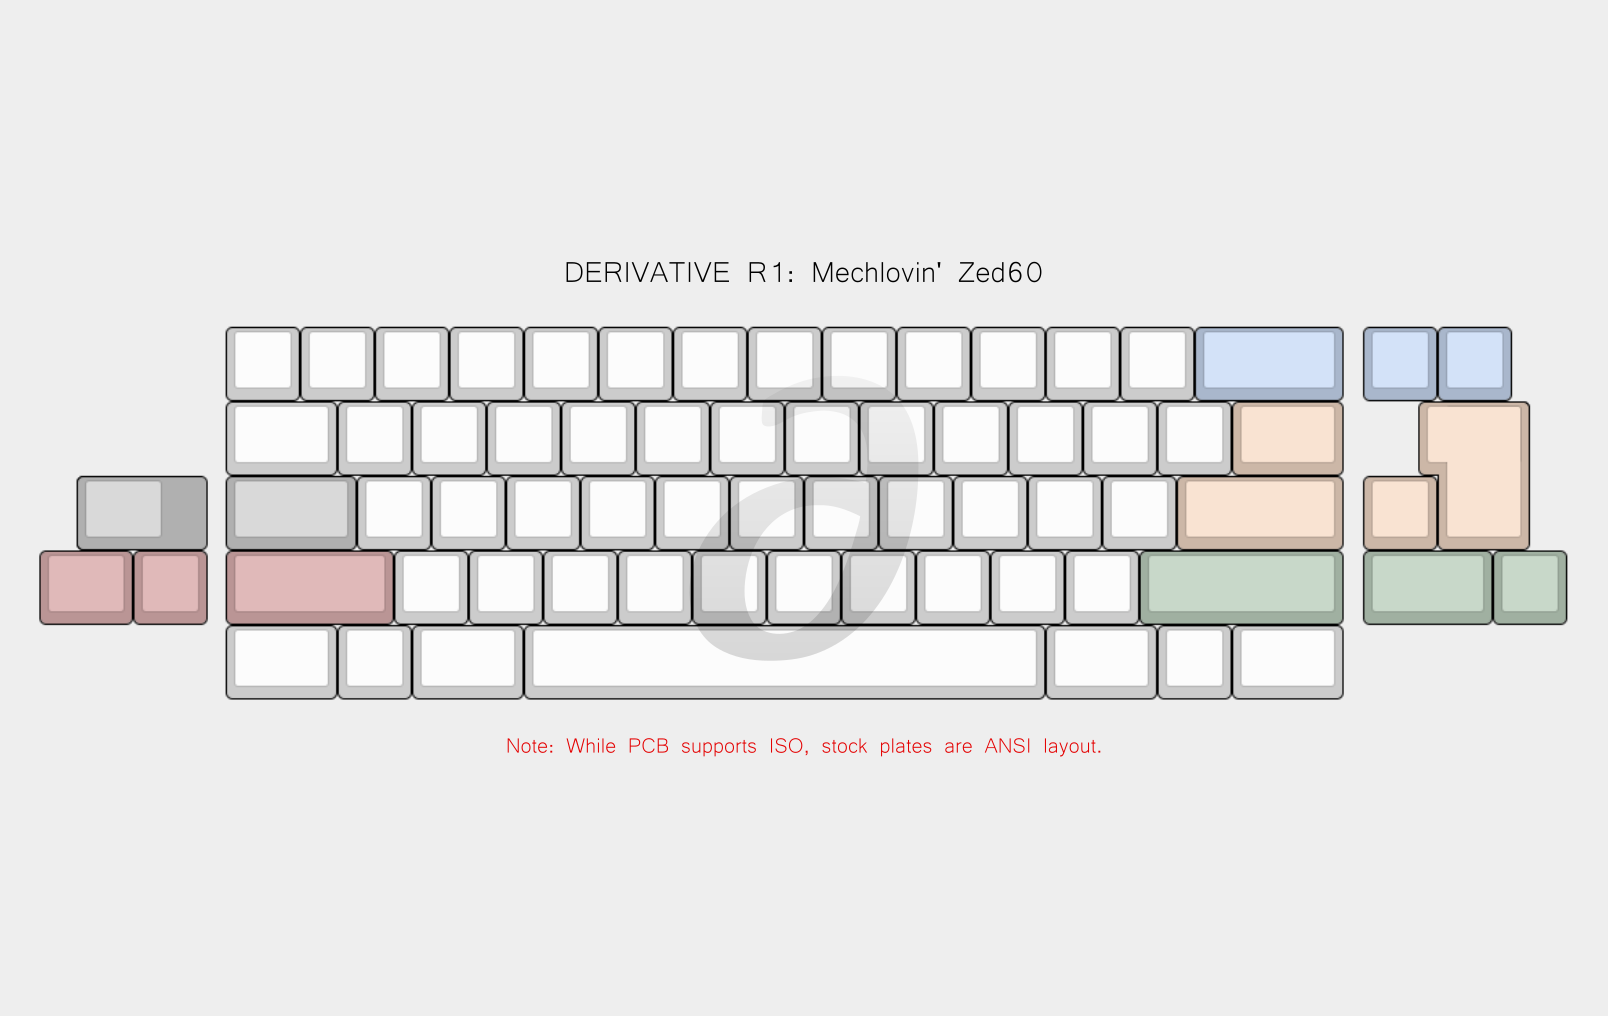 Derivative R1 Keyboard Add-ons